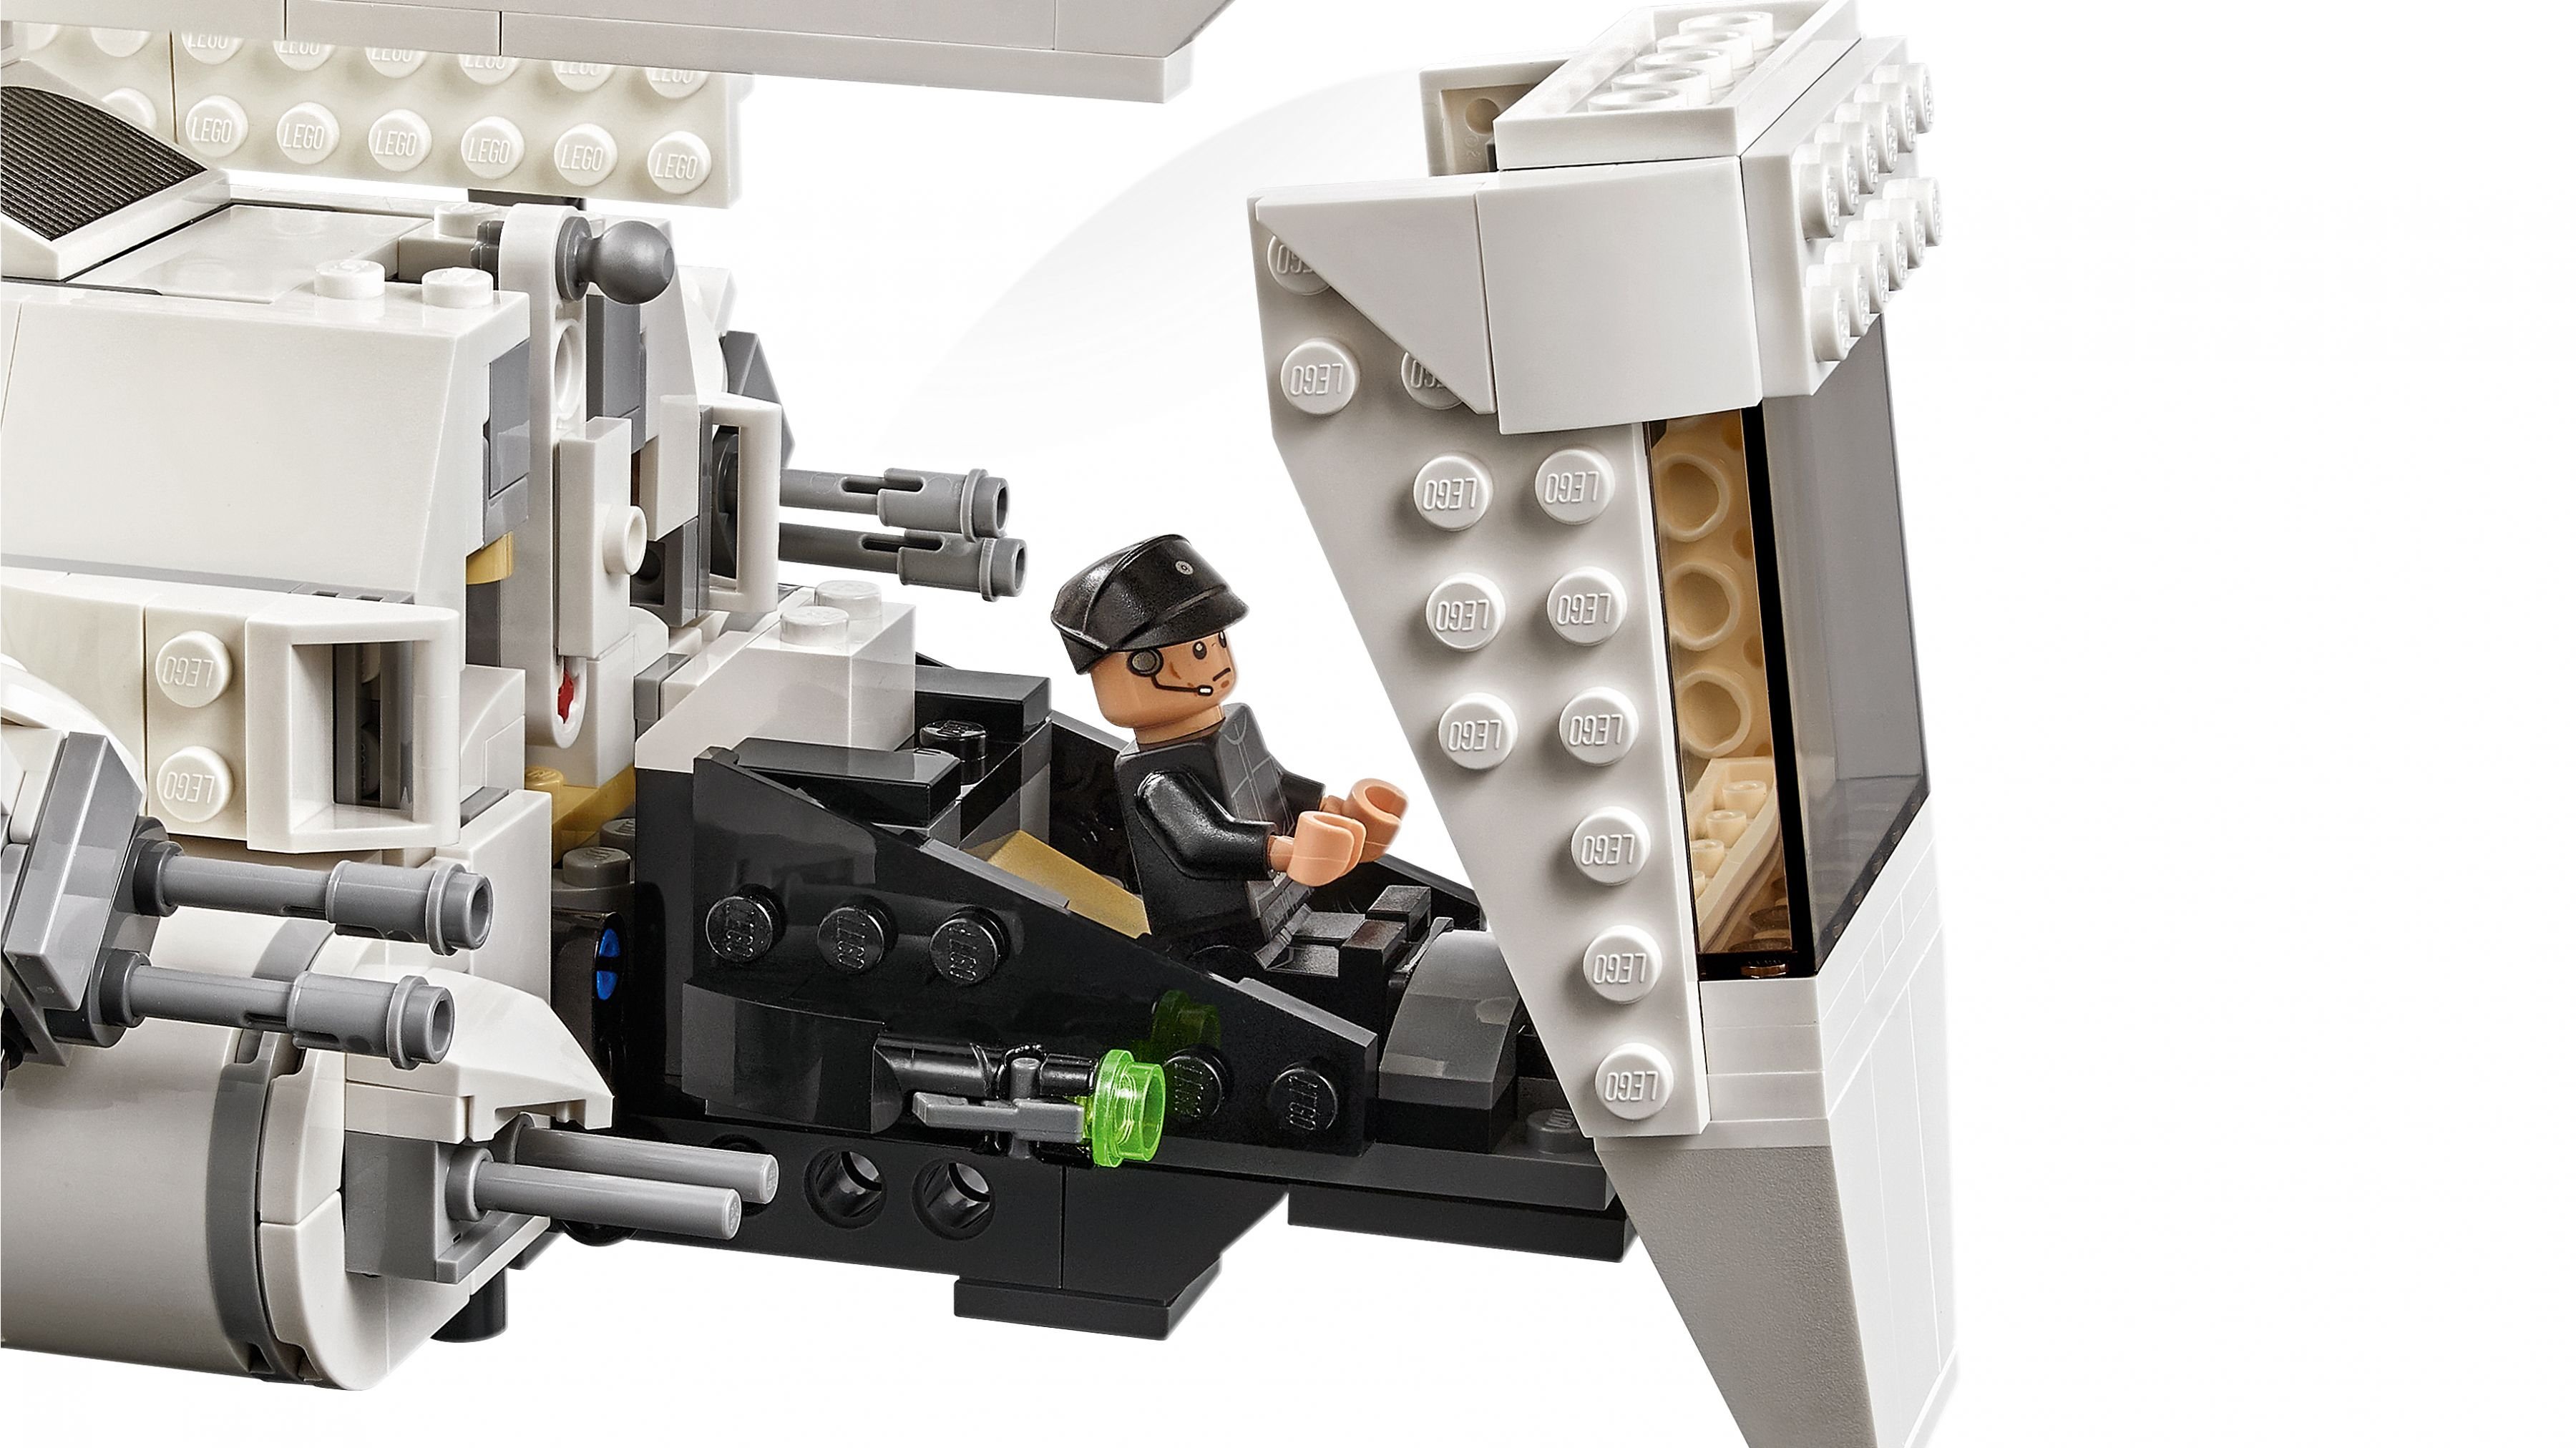 LEGO Star Wars 75302 Imperial Shuttle™ LEGO_75302_web_sec05_nobg.jpg